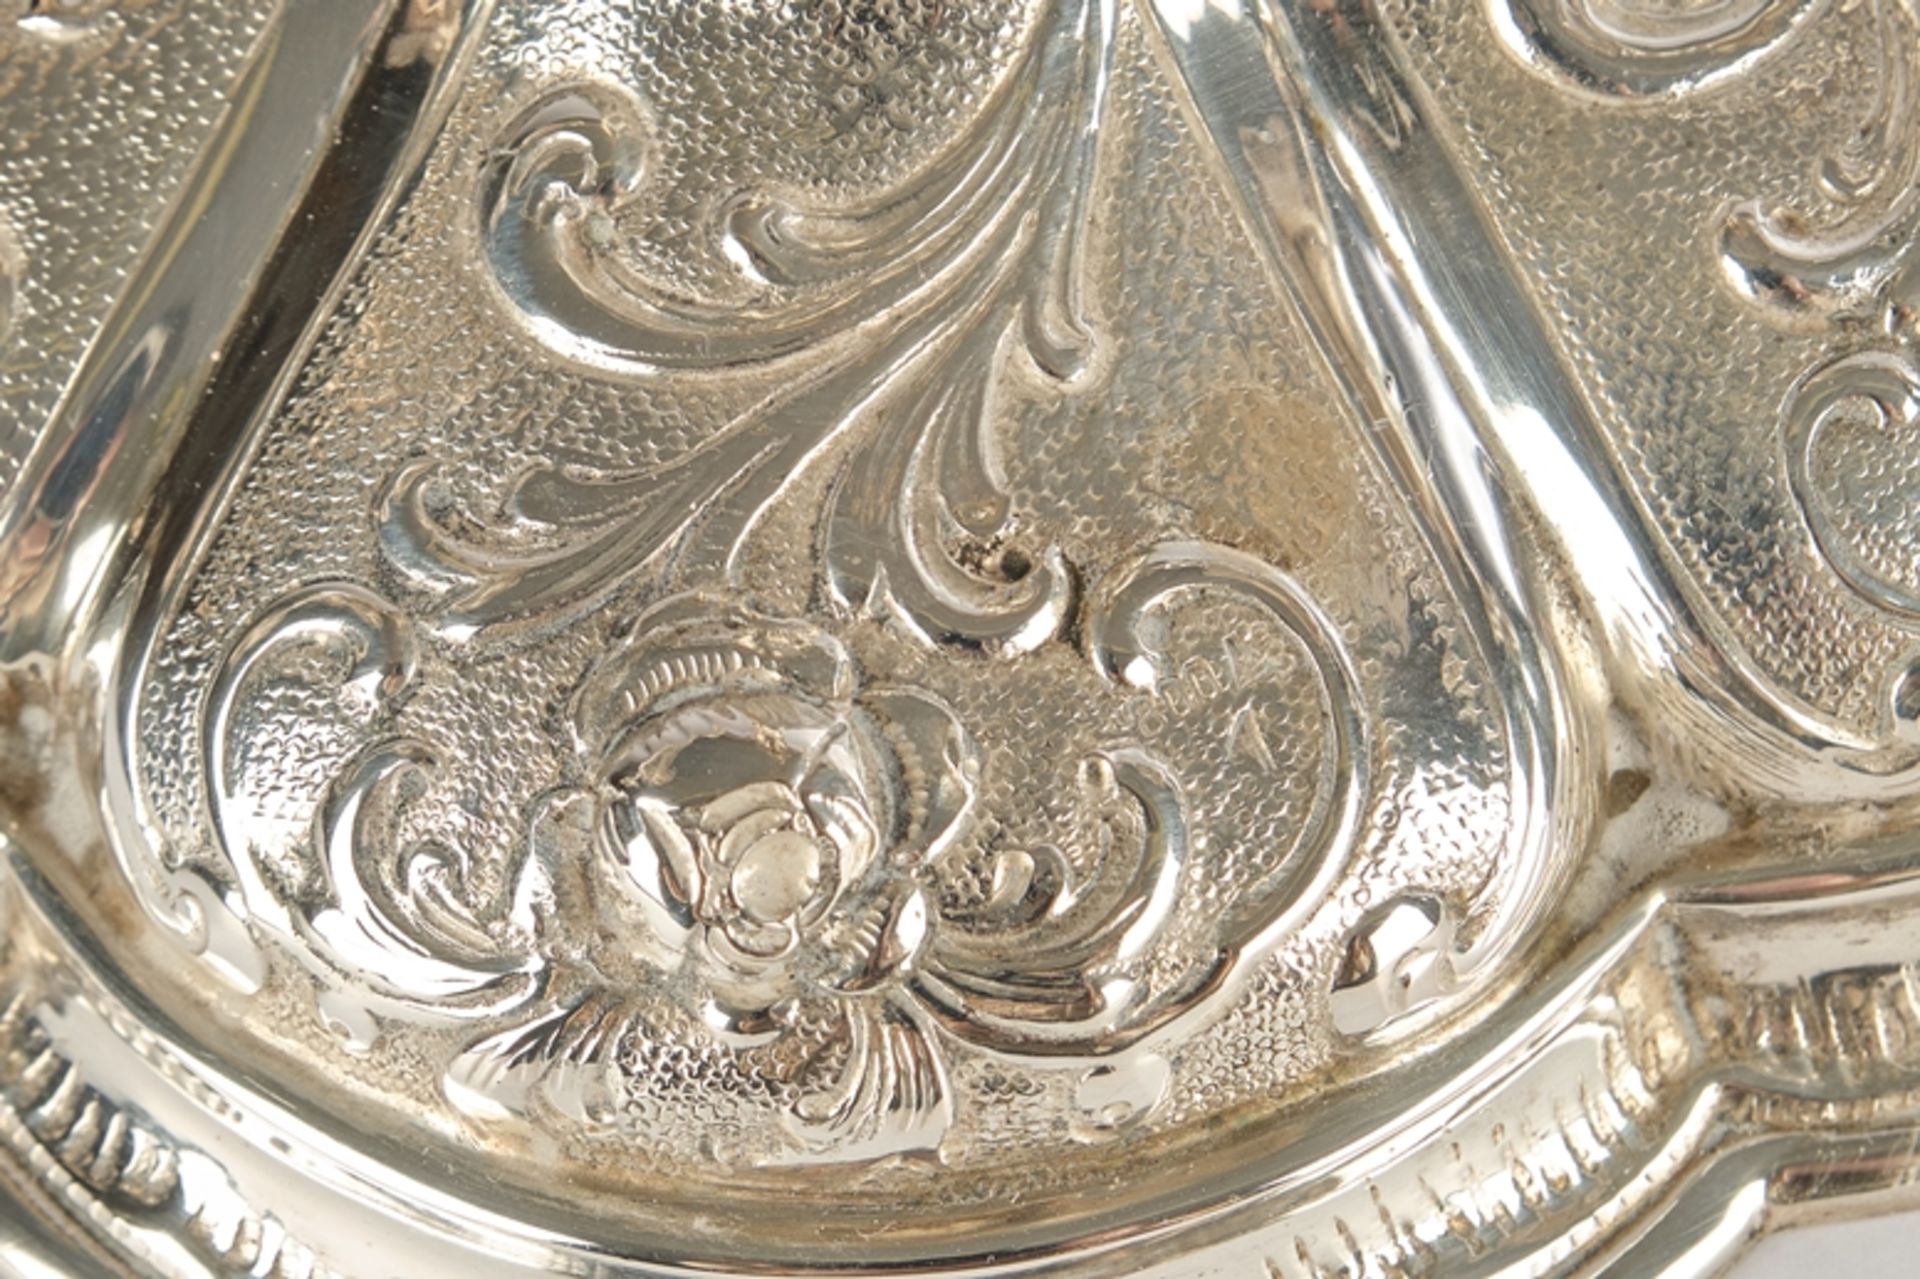 Tischleuchter, Silber 800, fünfflammig, Tüllen mit Tropfeinsätzen, zwei ausladende Leuchterarme, wo - Bild 2 aus 2